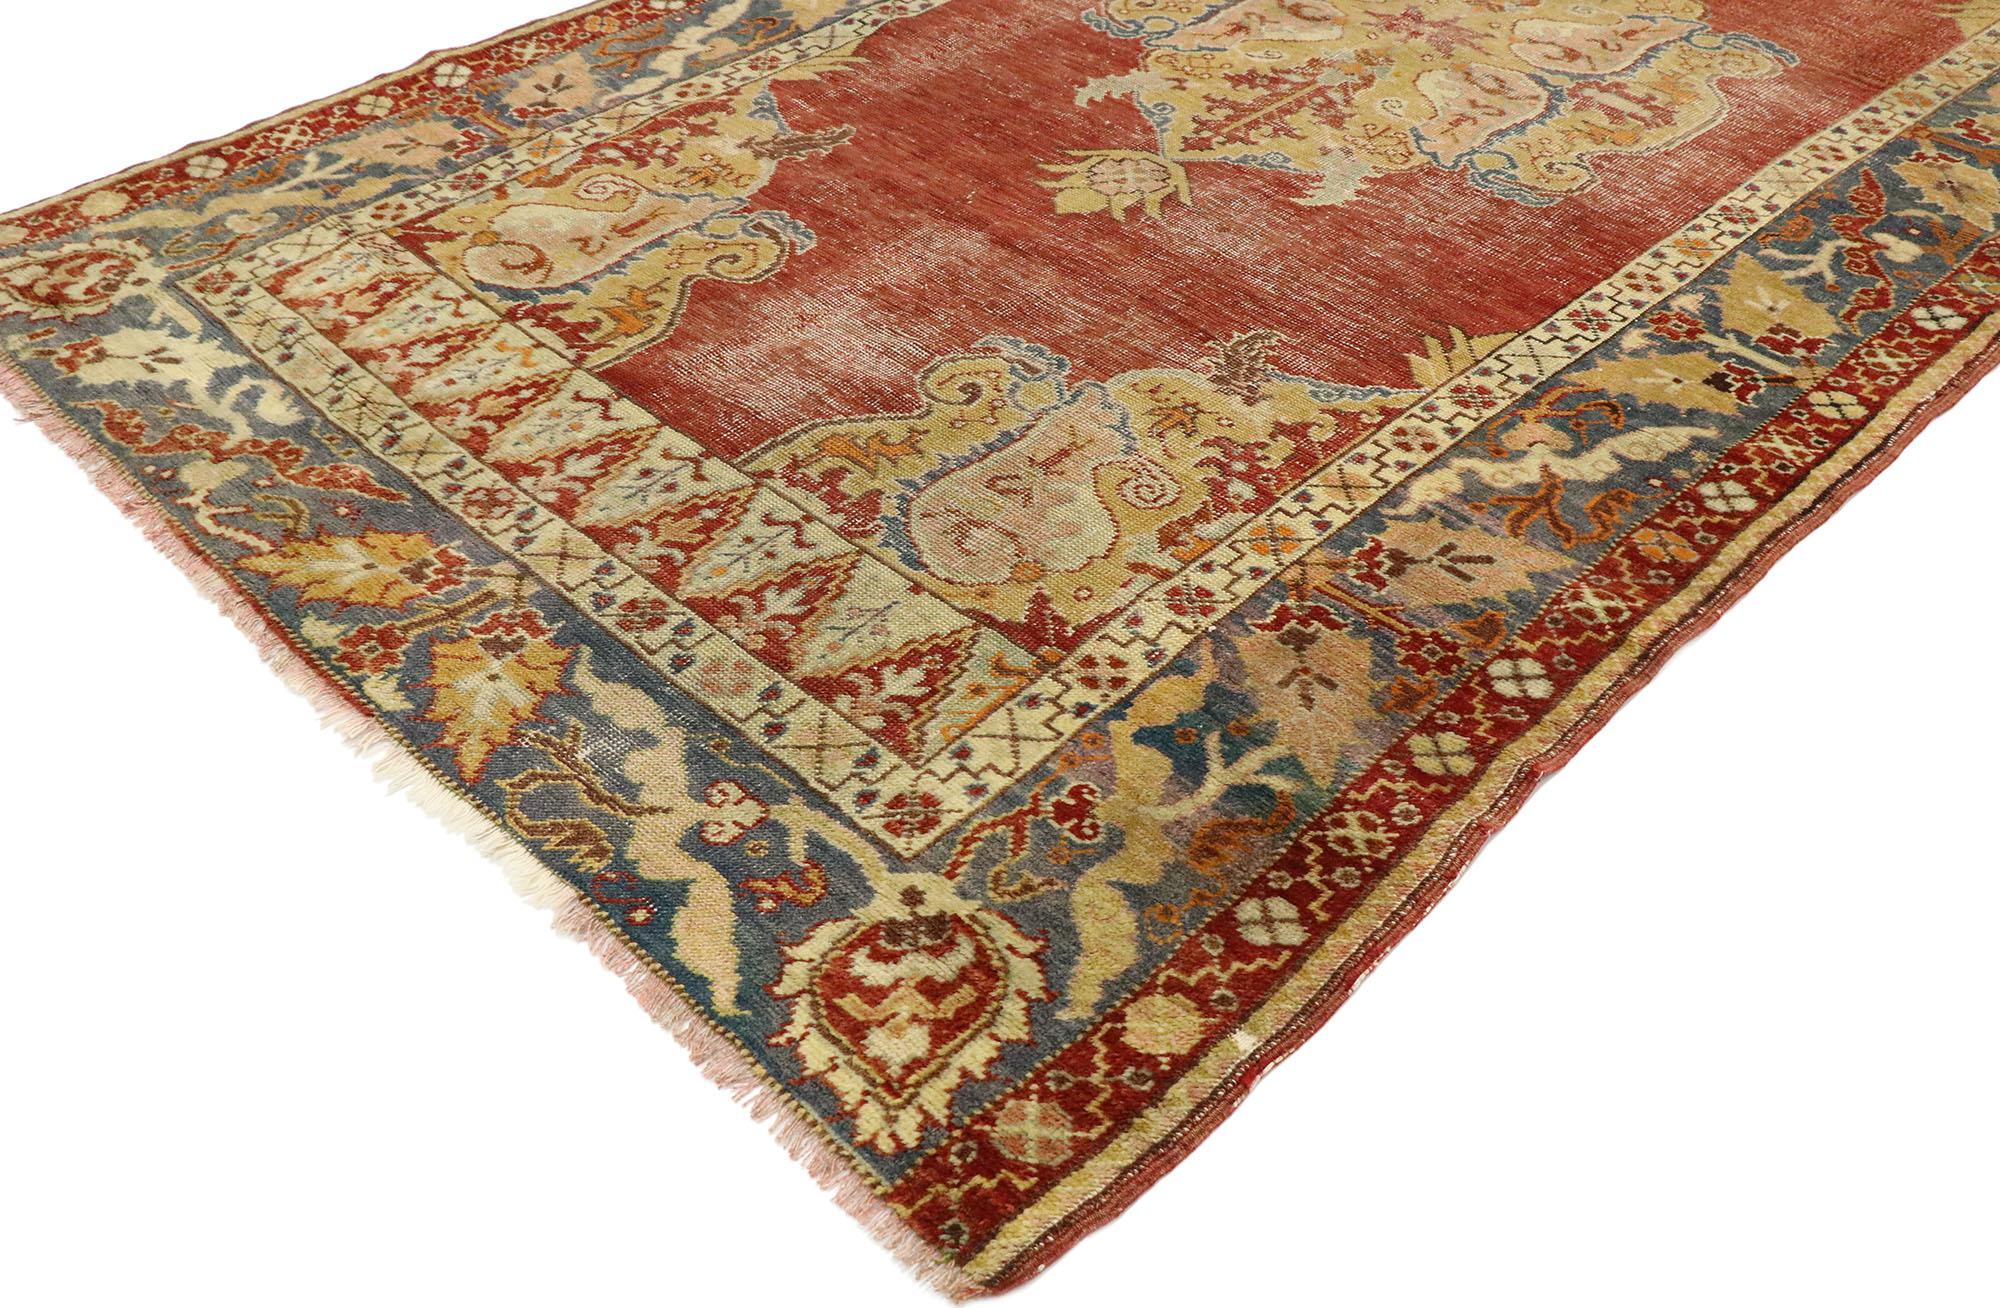 53149, alter türkischer Oushak-Teppich im neoklassischen Stil. Dieser handgeknüpfte türkische Oushak-Teppich aus Wolle mit zeitlosem Design und rustikaler Sensibilität verkörpert den neoklassischen Stil von Southern Living auf wunderschöne Weise.